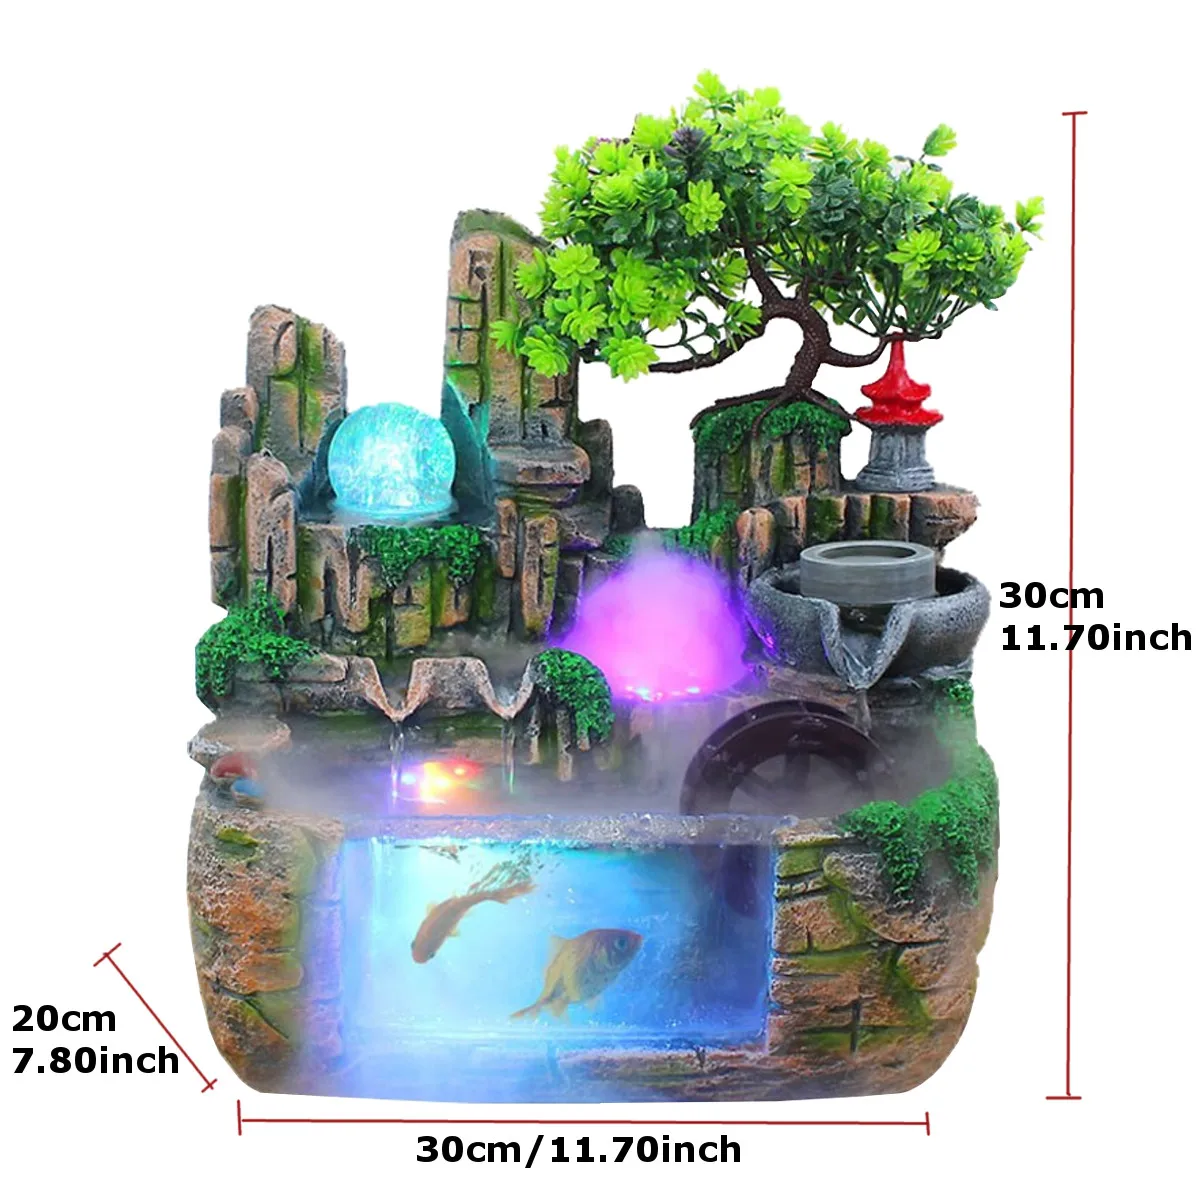 СВЕТОДИОДНЫЙ Крытый резиновая имитация Рокери водопад статуя настольный фонтан геомантическая медитация домашний садовый декор микро пейзаж